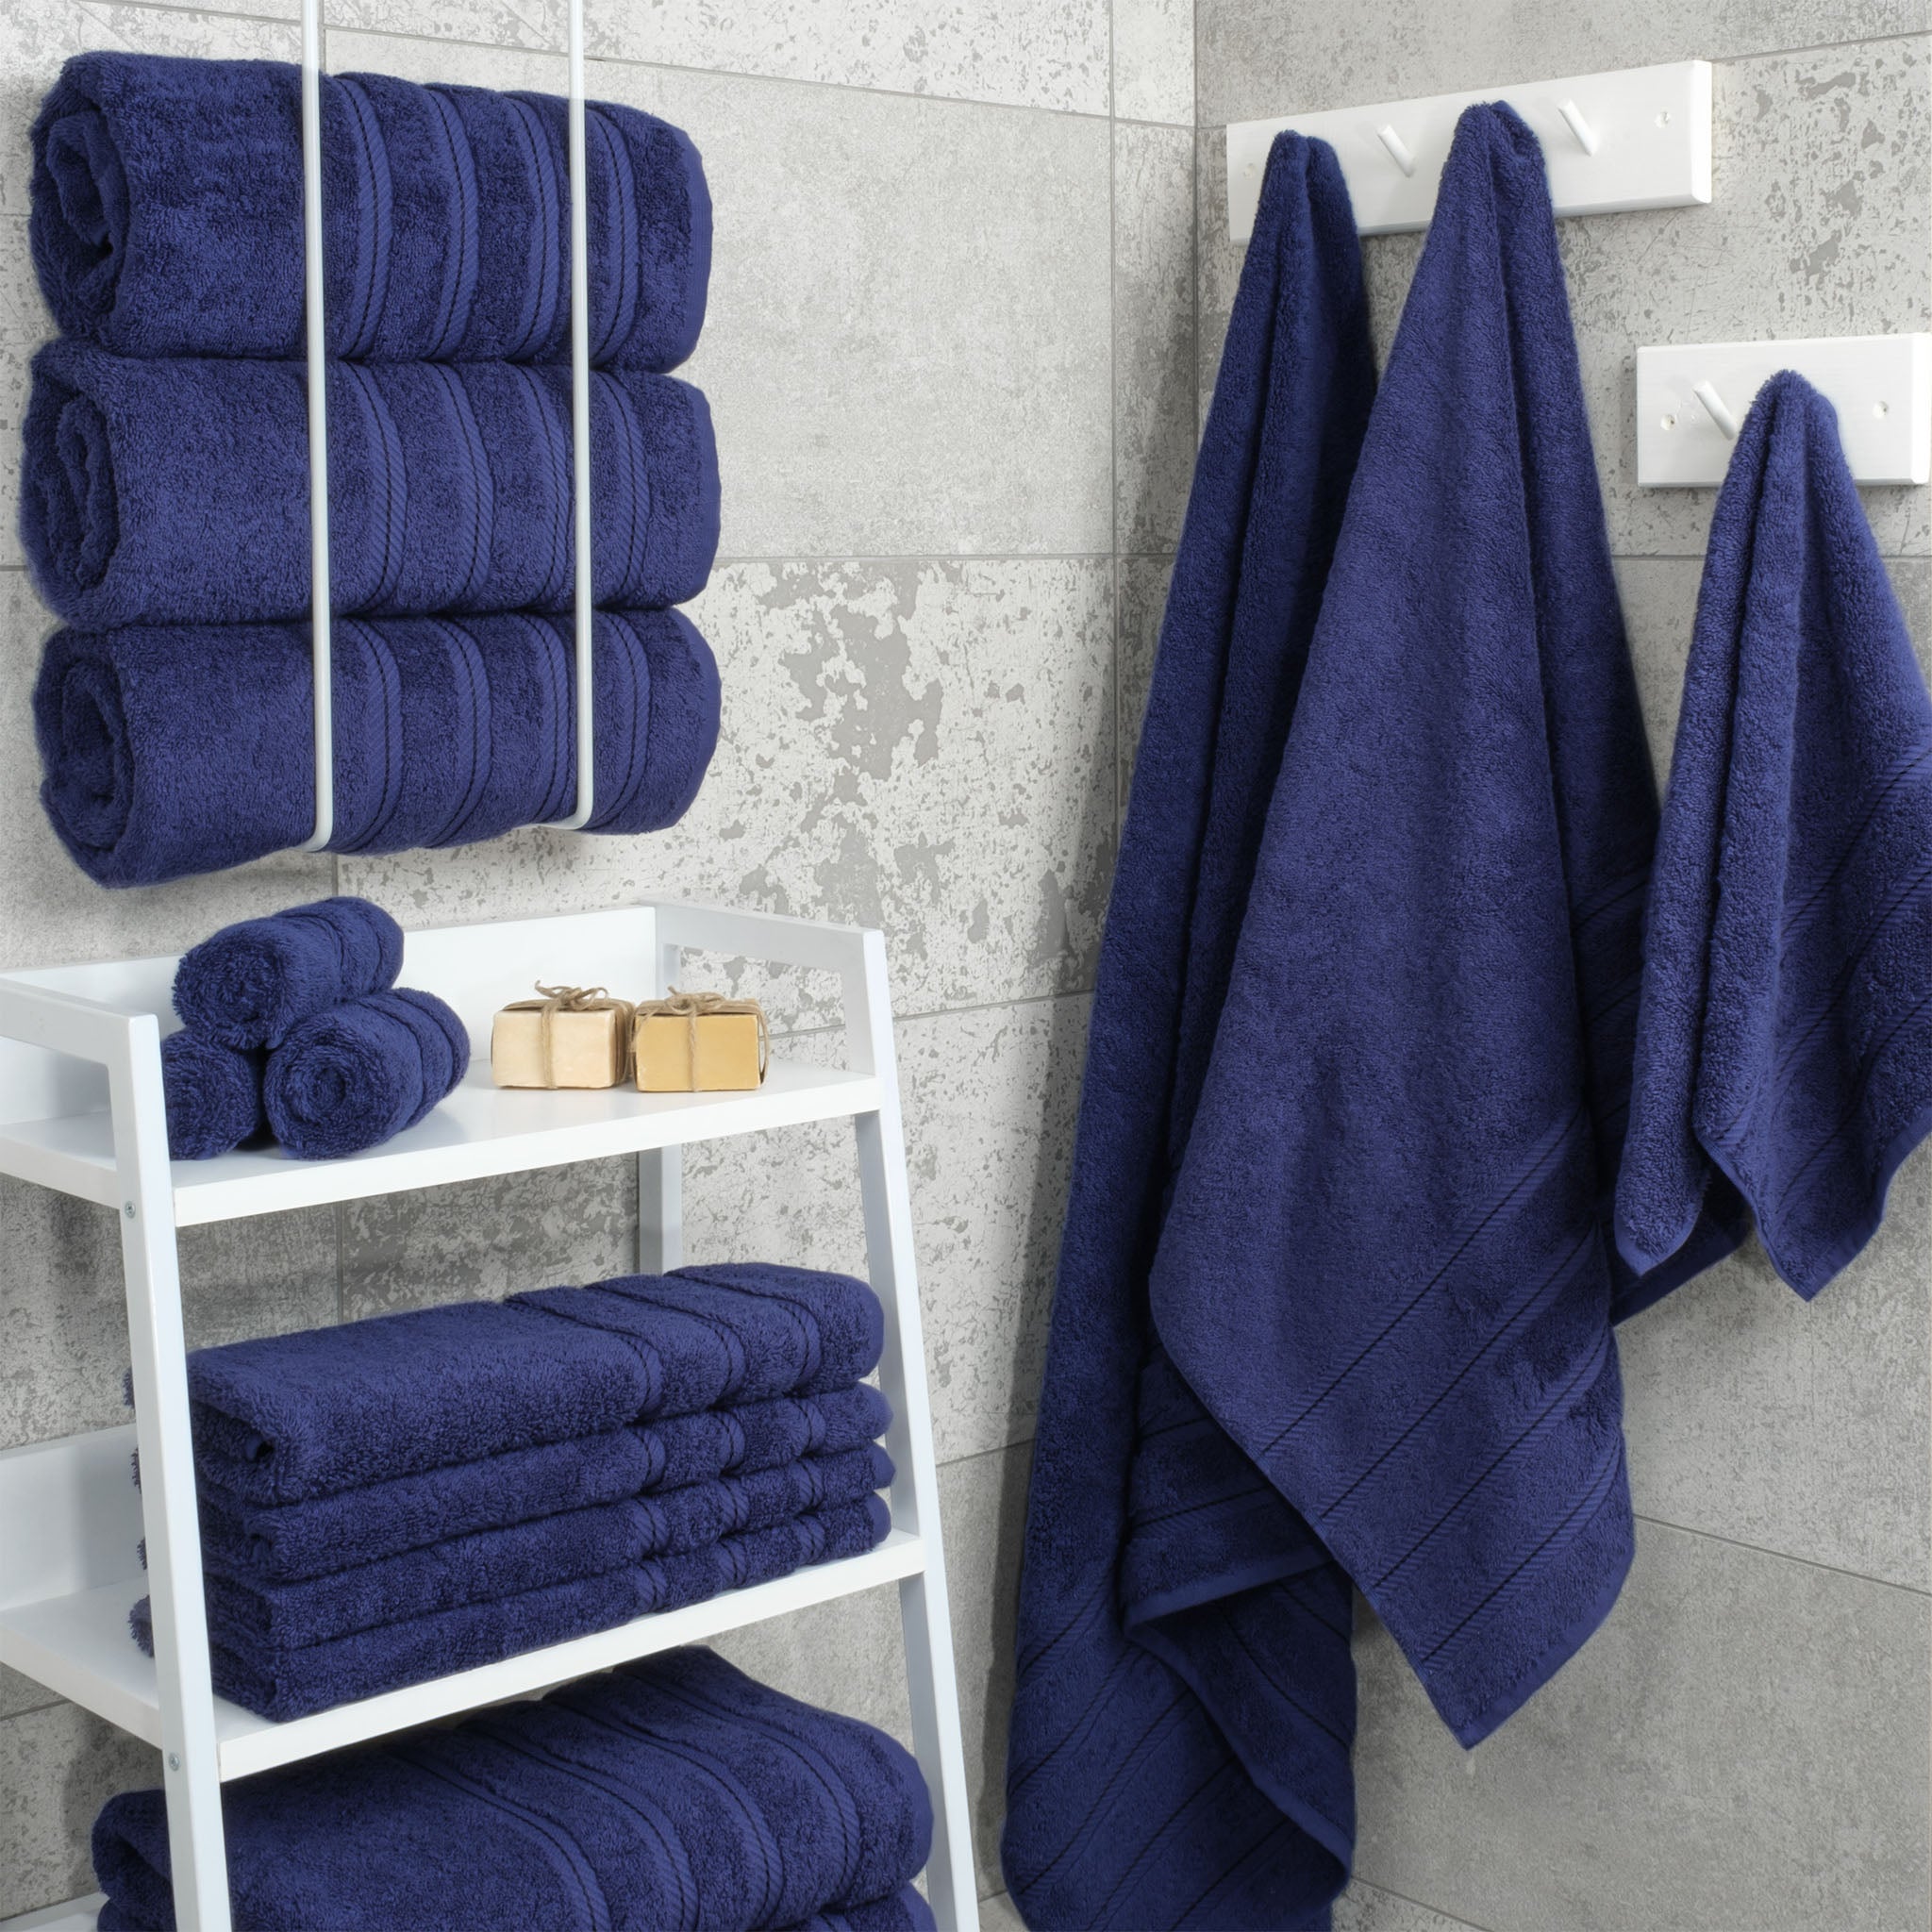 American Soft Linen 4-Piece 100% Navy Blue Turkish Cotton Bath